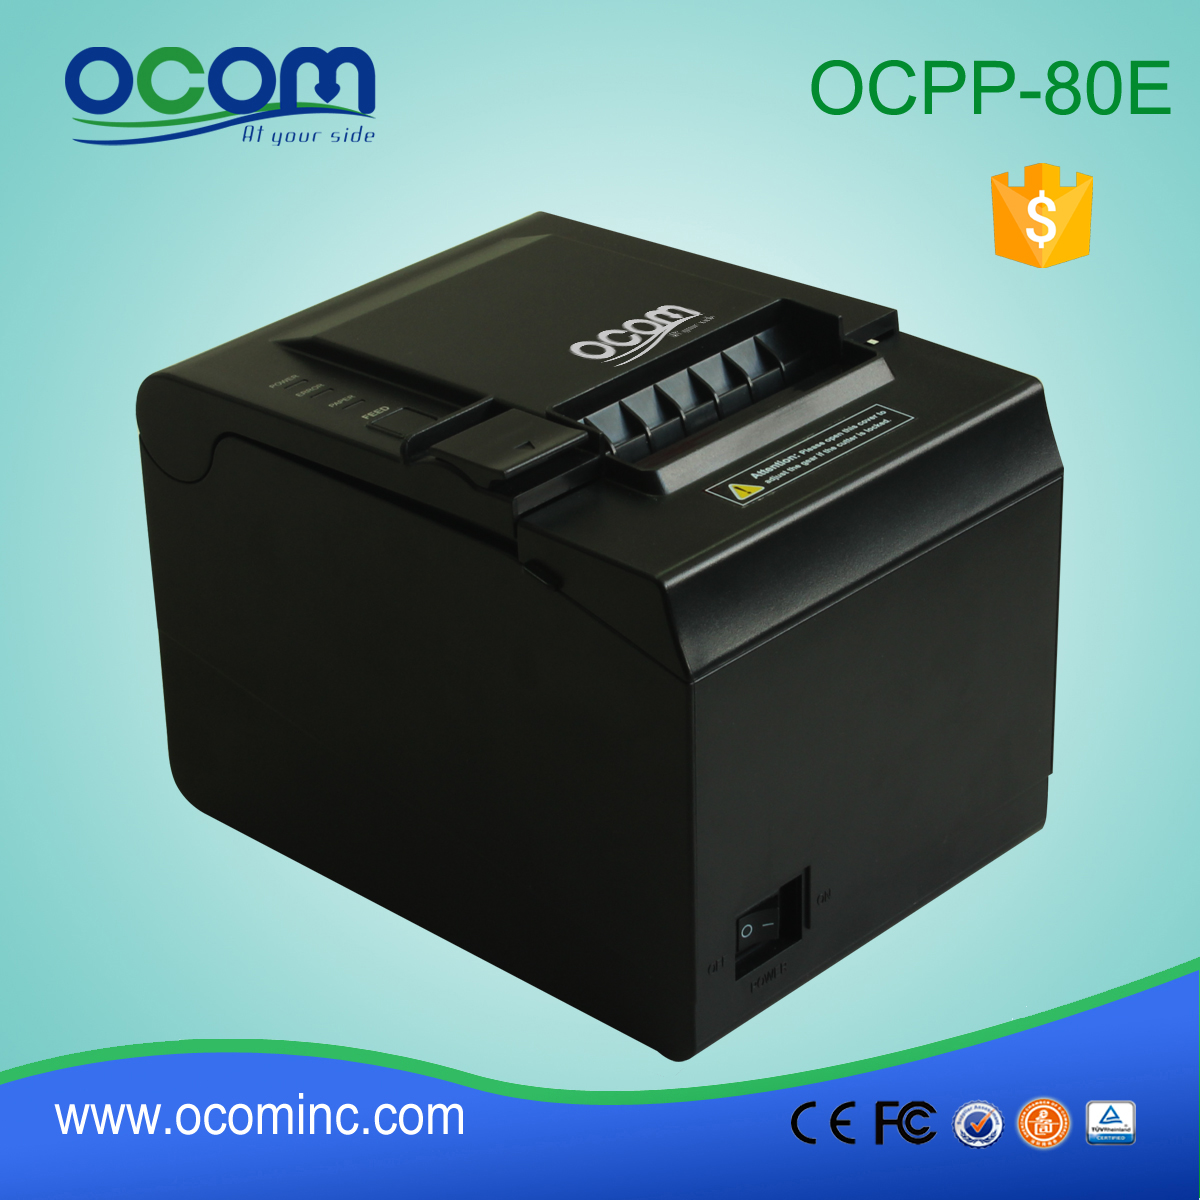 Υψηλής ποιότητας πολλαπλές 80 χιλιοστά λειτουργία POS εκτυπωτή-OCPP-80E